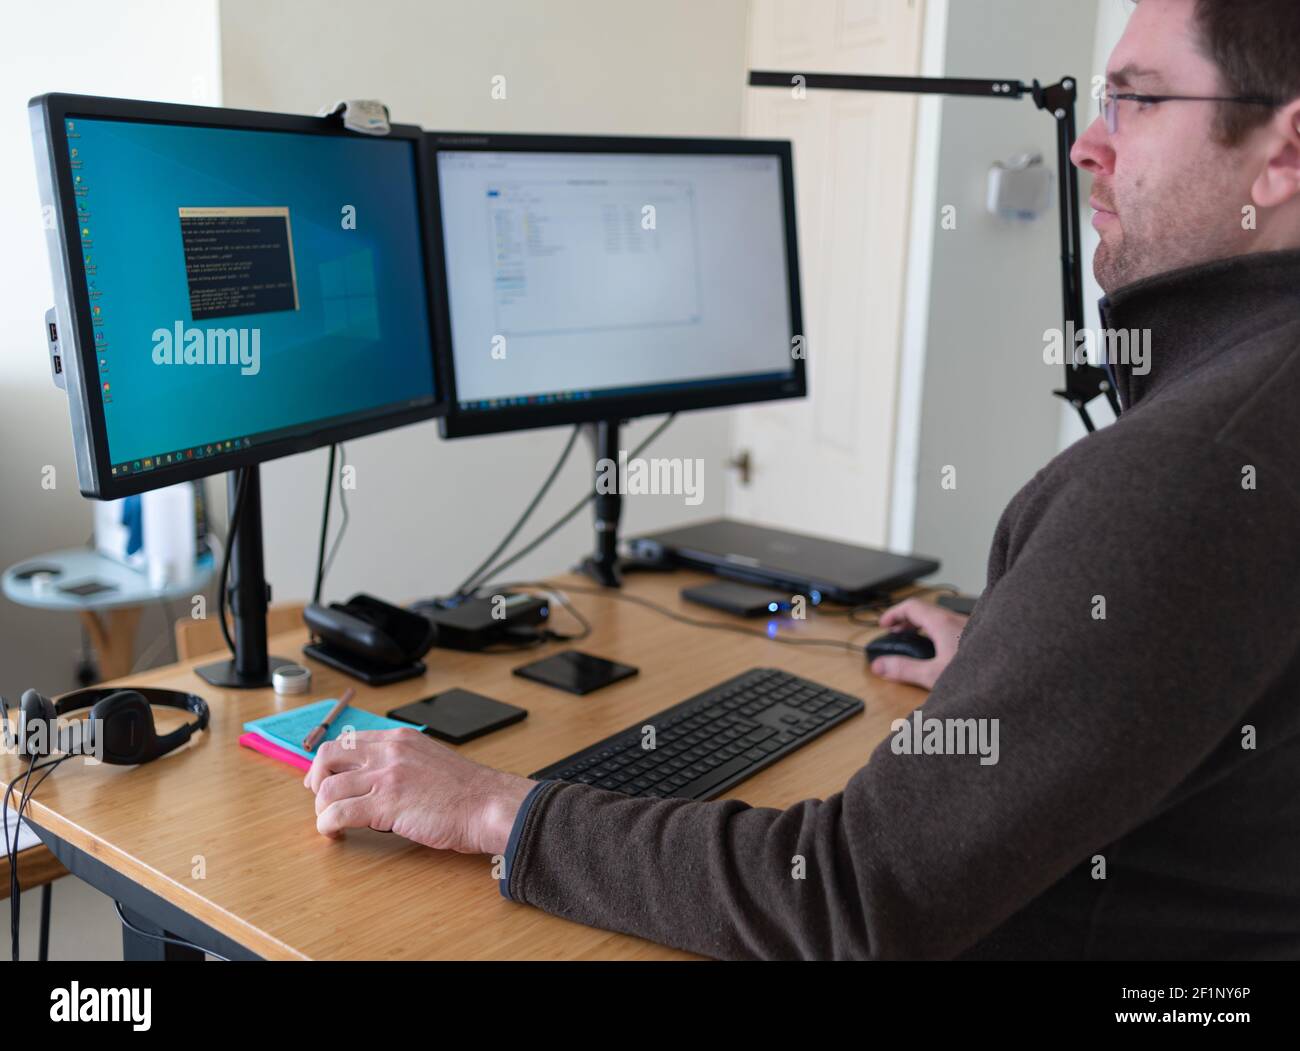 L'homme est assis à un bureau à domicile devant deux moniteurs d'ordinateur relevés jusqu'au niveau des yeux sur les bras. Travail à distance. Banque D'Images